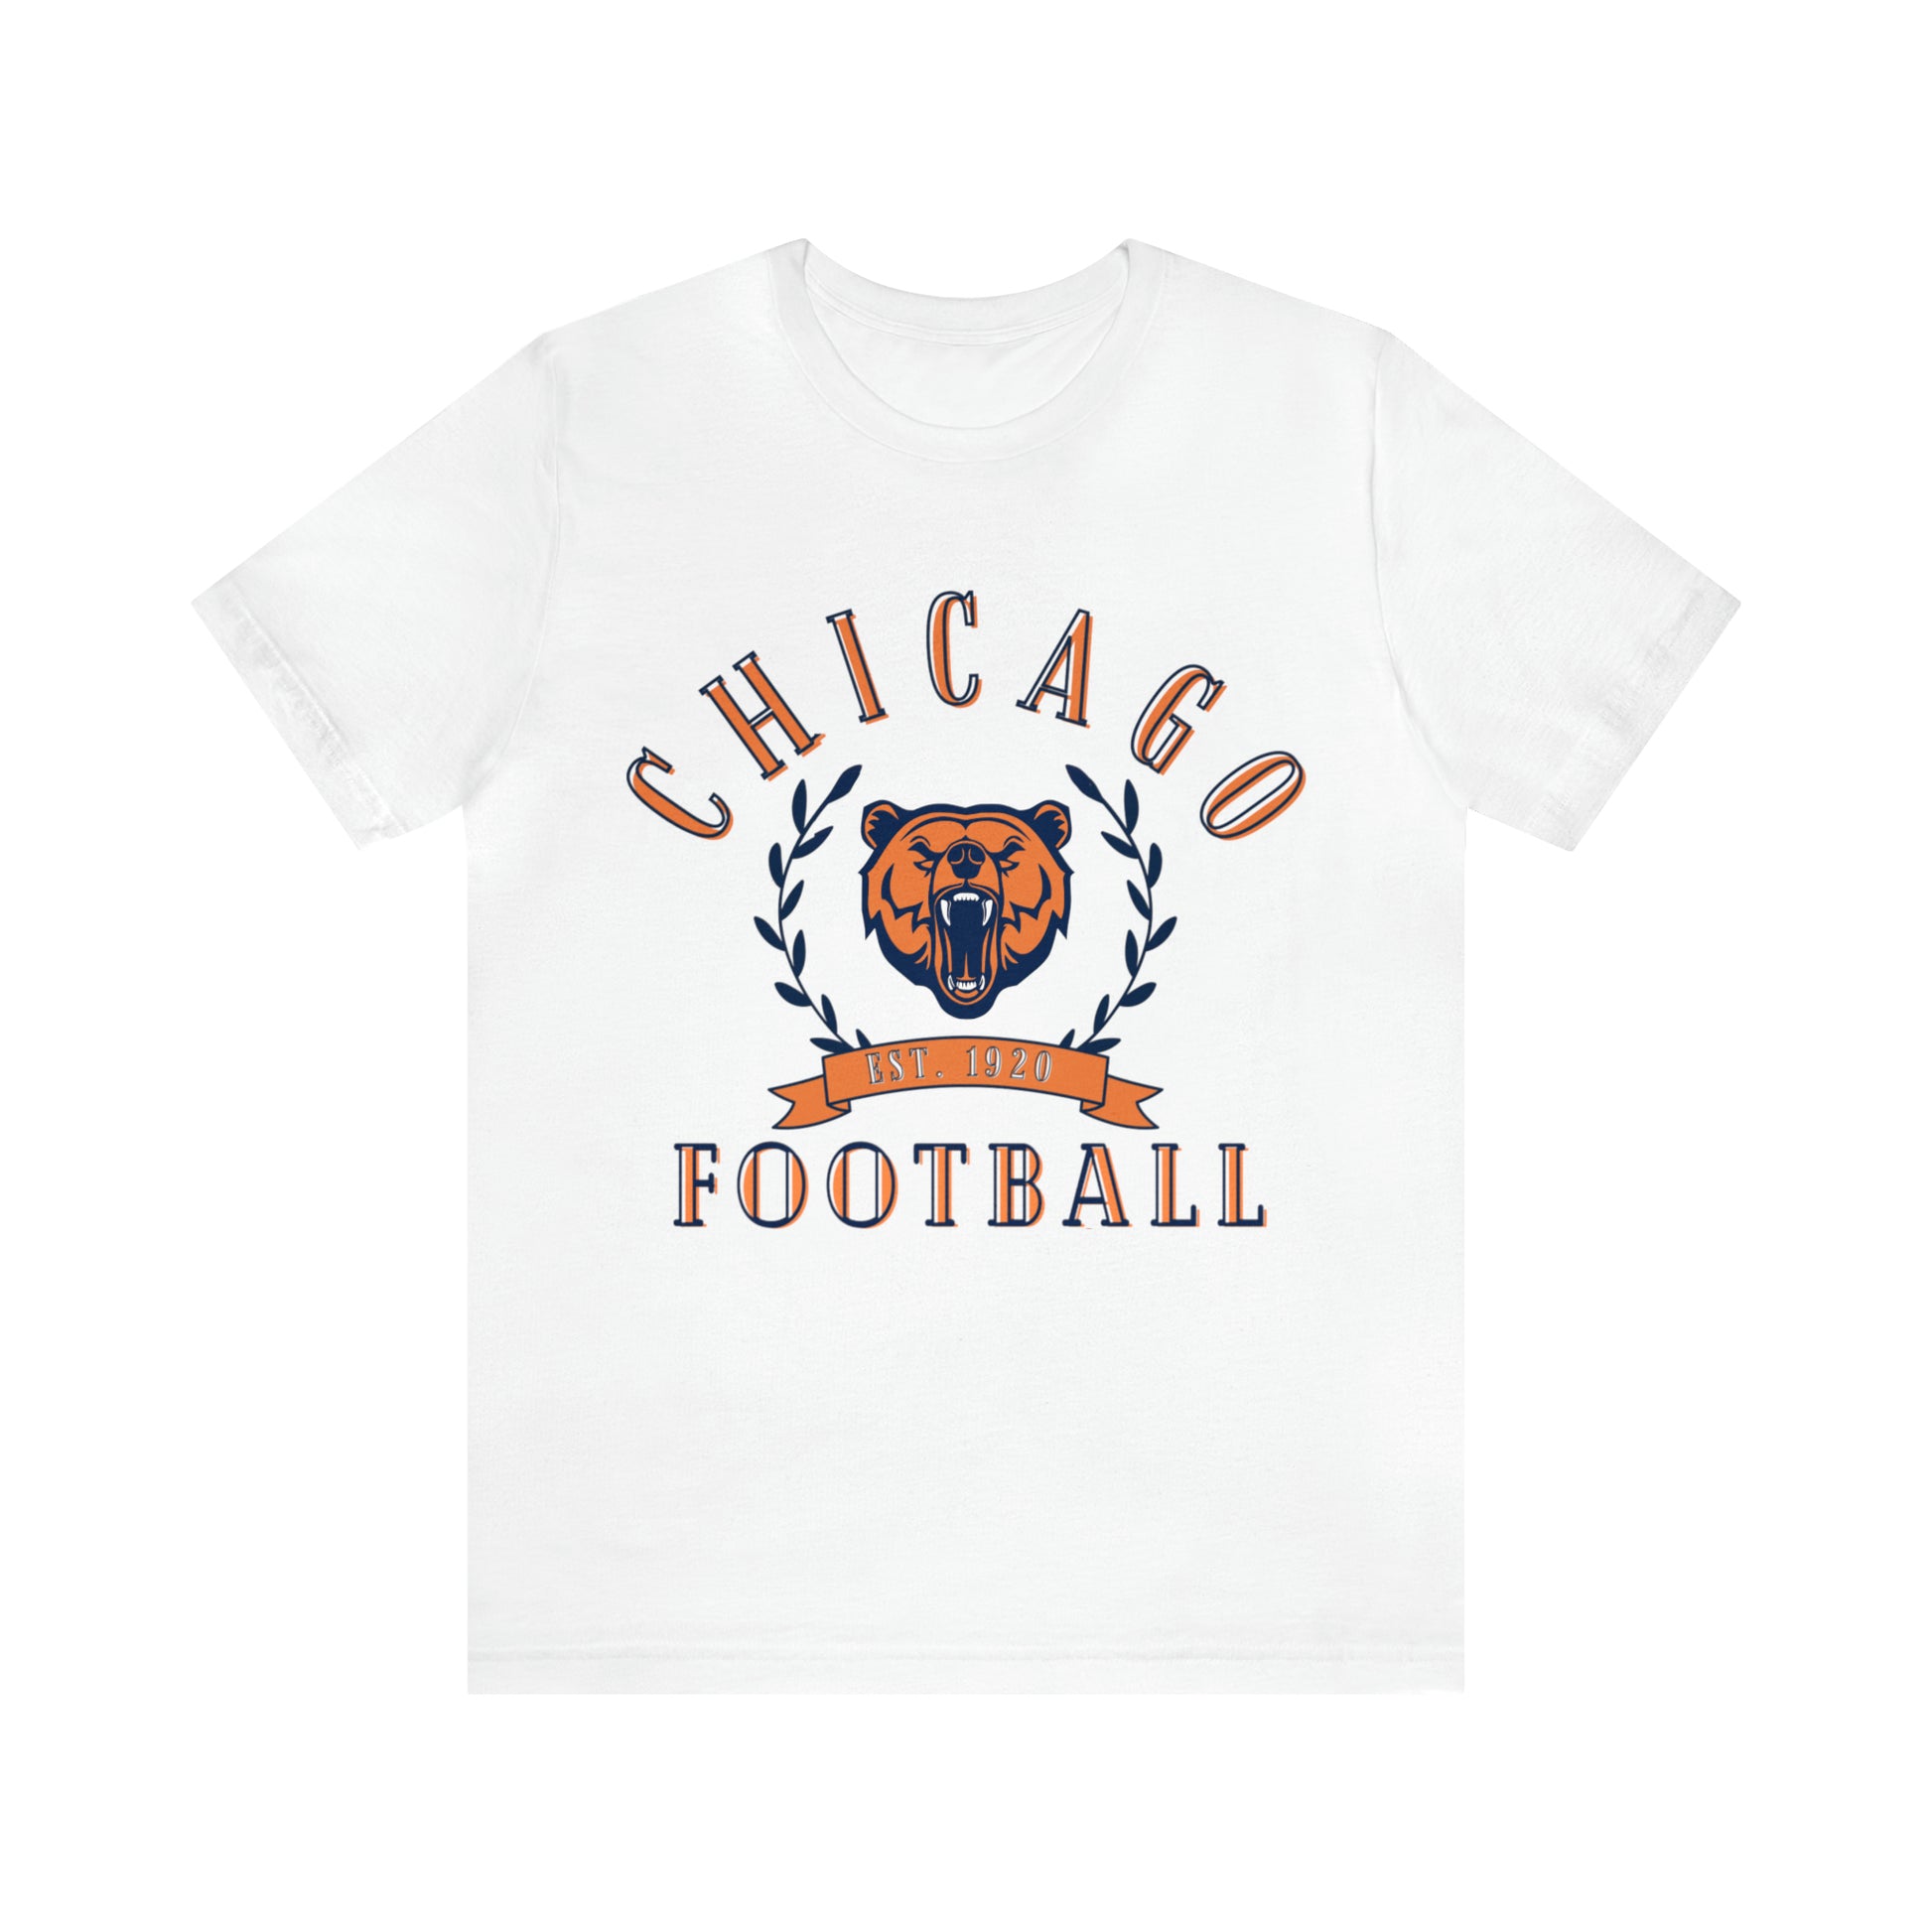 Vintage Chicago Bears Short Sleeve T-Shirt - Throwback NFL Football Men's & Women's Oversized Tee - Design 3